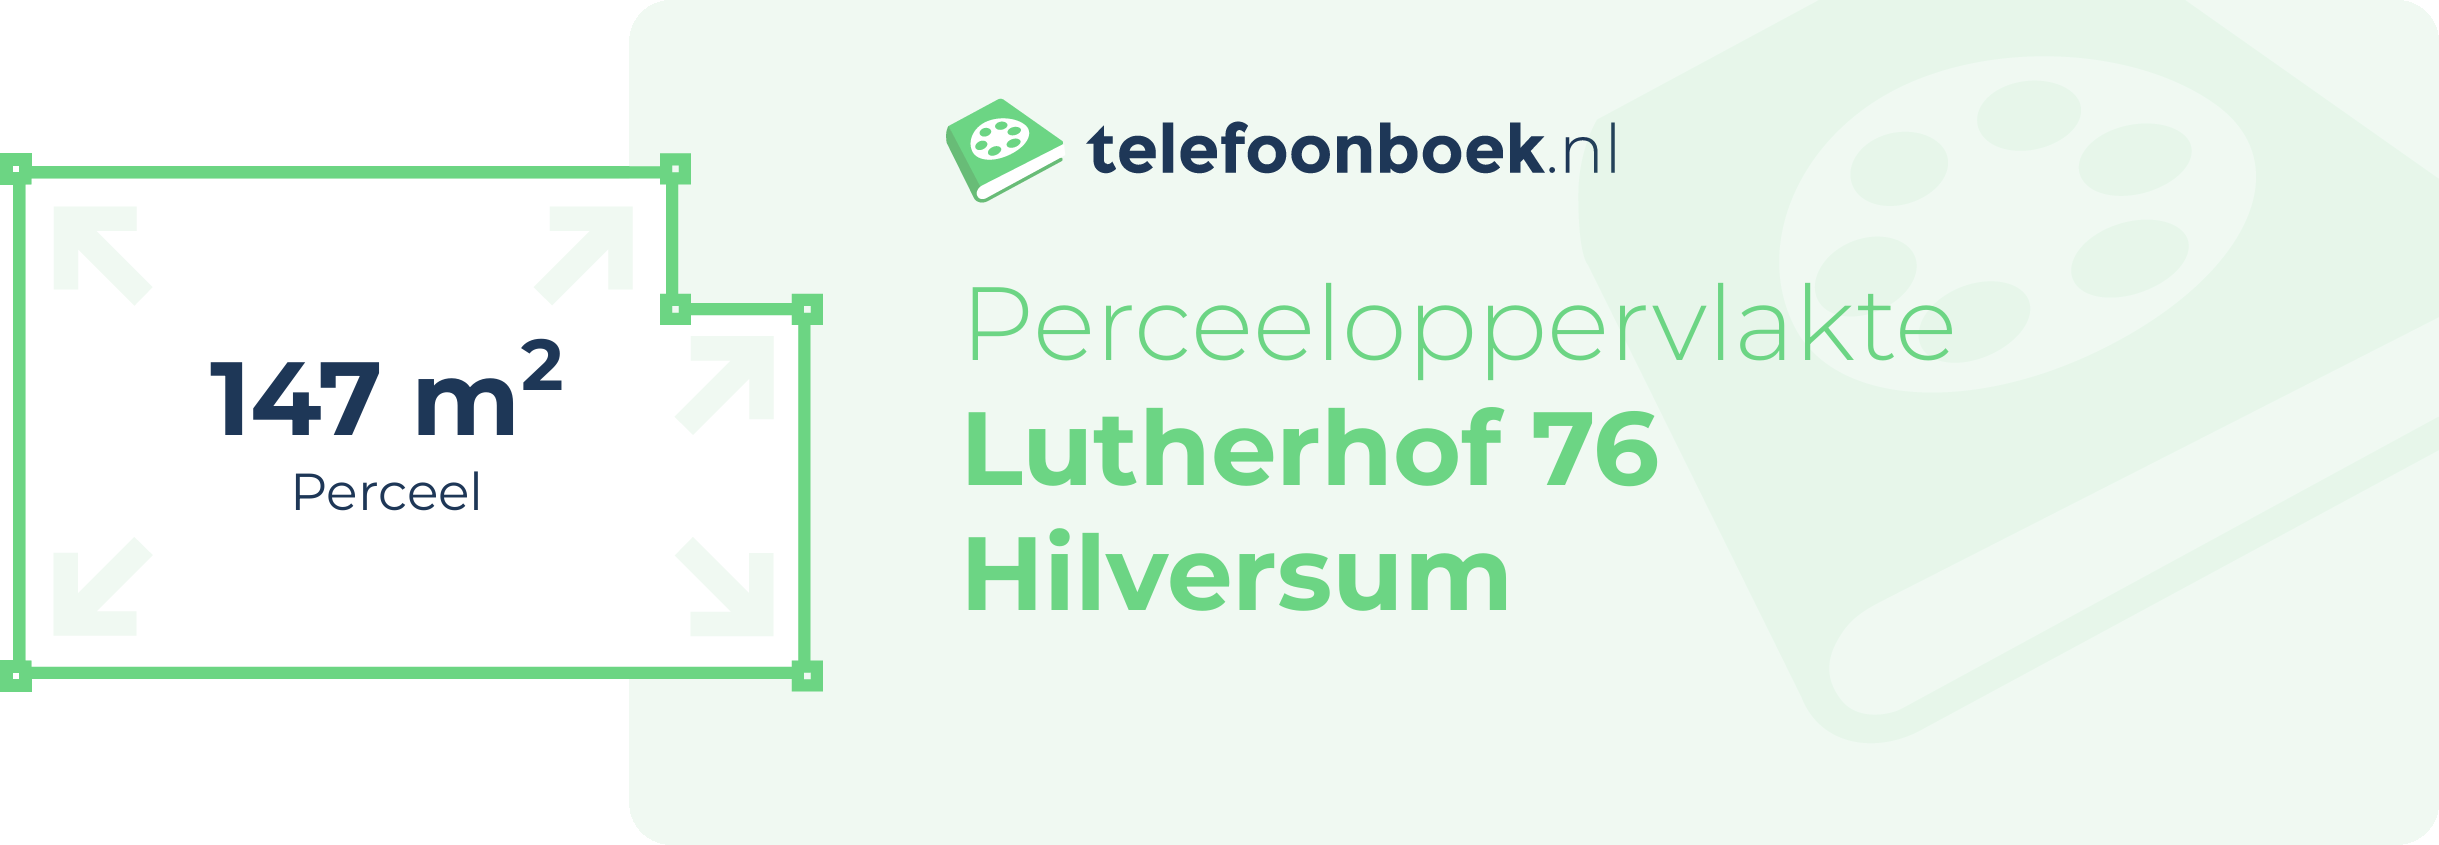 Perceeloppervlakte Lutherhof 76 Hilversum